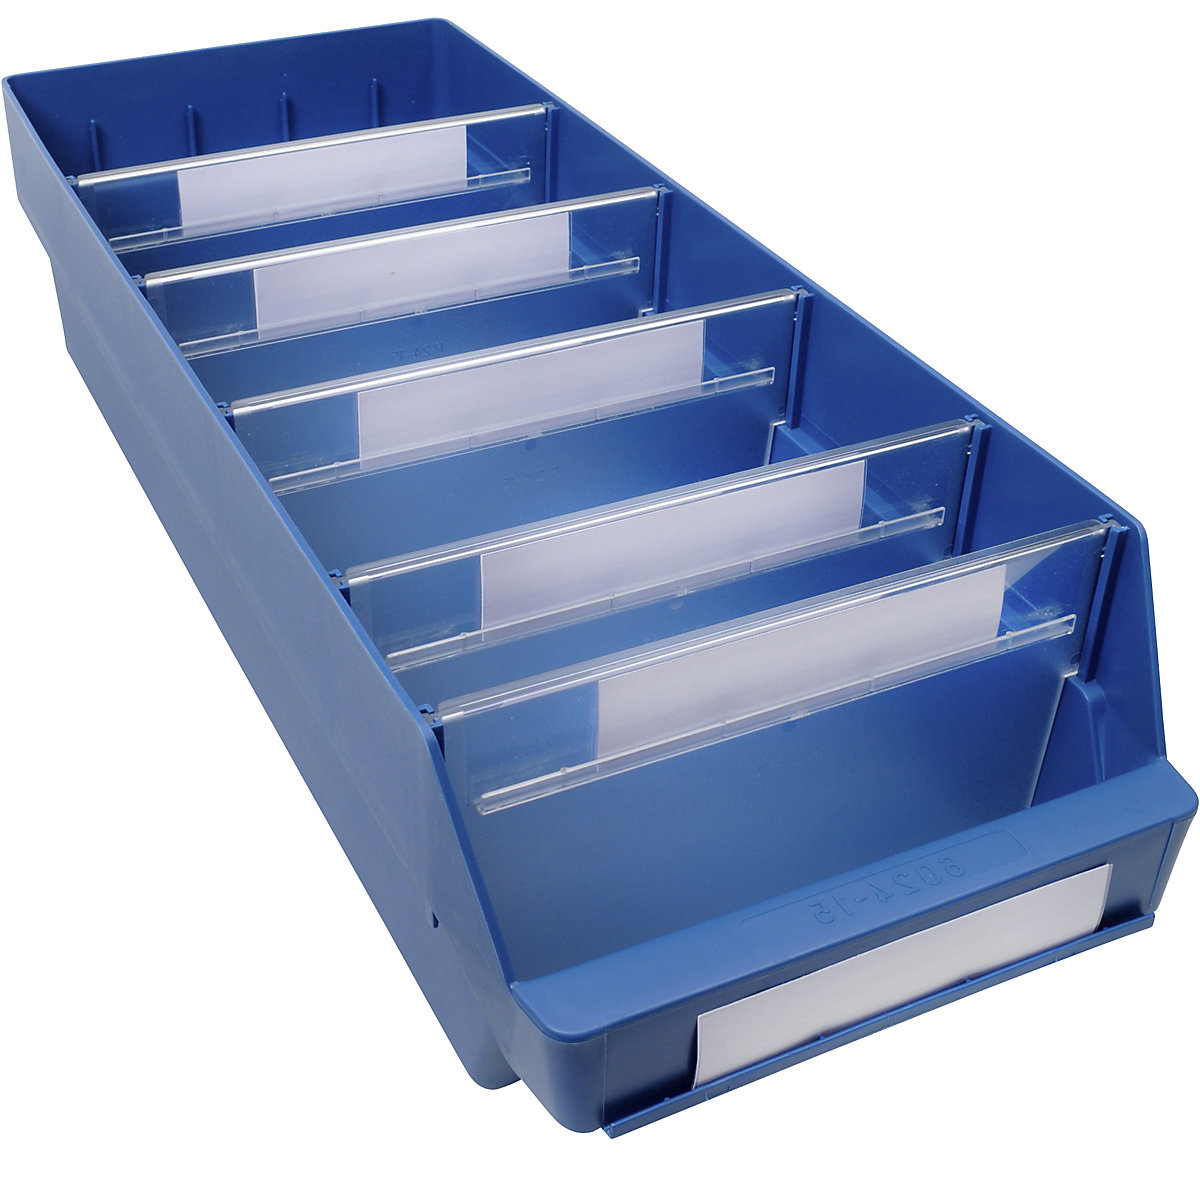 Regalkasten aus hochschlagfestem Polypropylen STEMO, blau, LxBxH 600 x 240 x 150 mm, VE 10 Stk-11